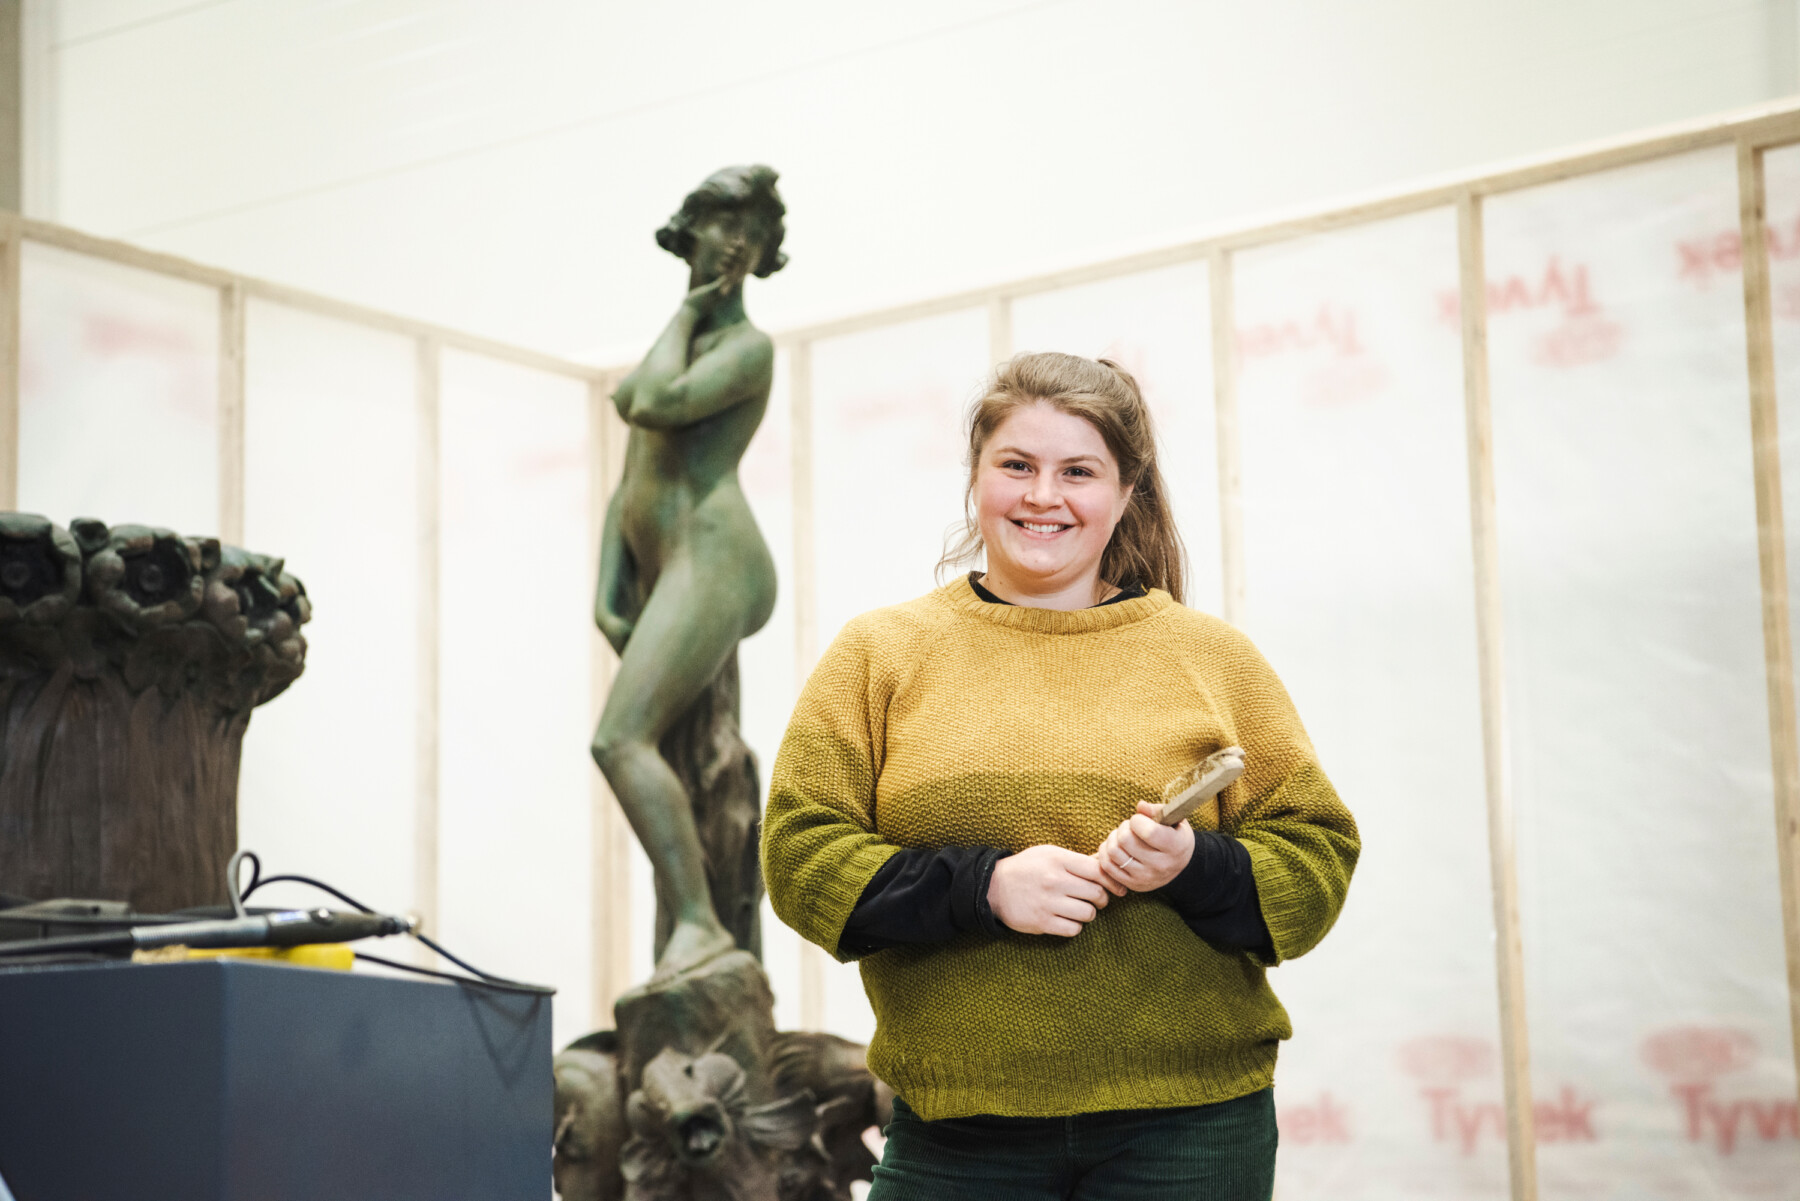 تقف امرأة تحمل فرشاة في يديها في ورشة عمل أمام تمثال معدني لأنثى.